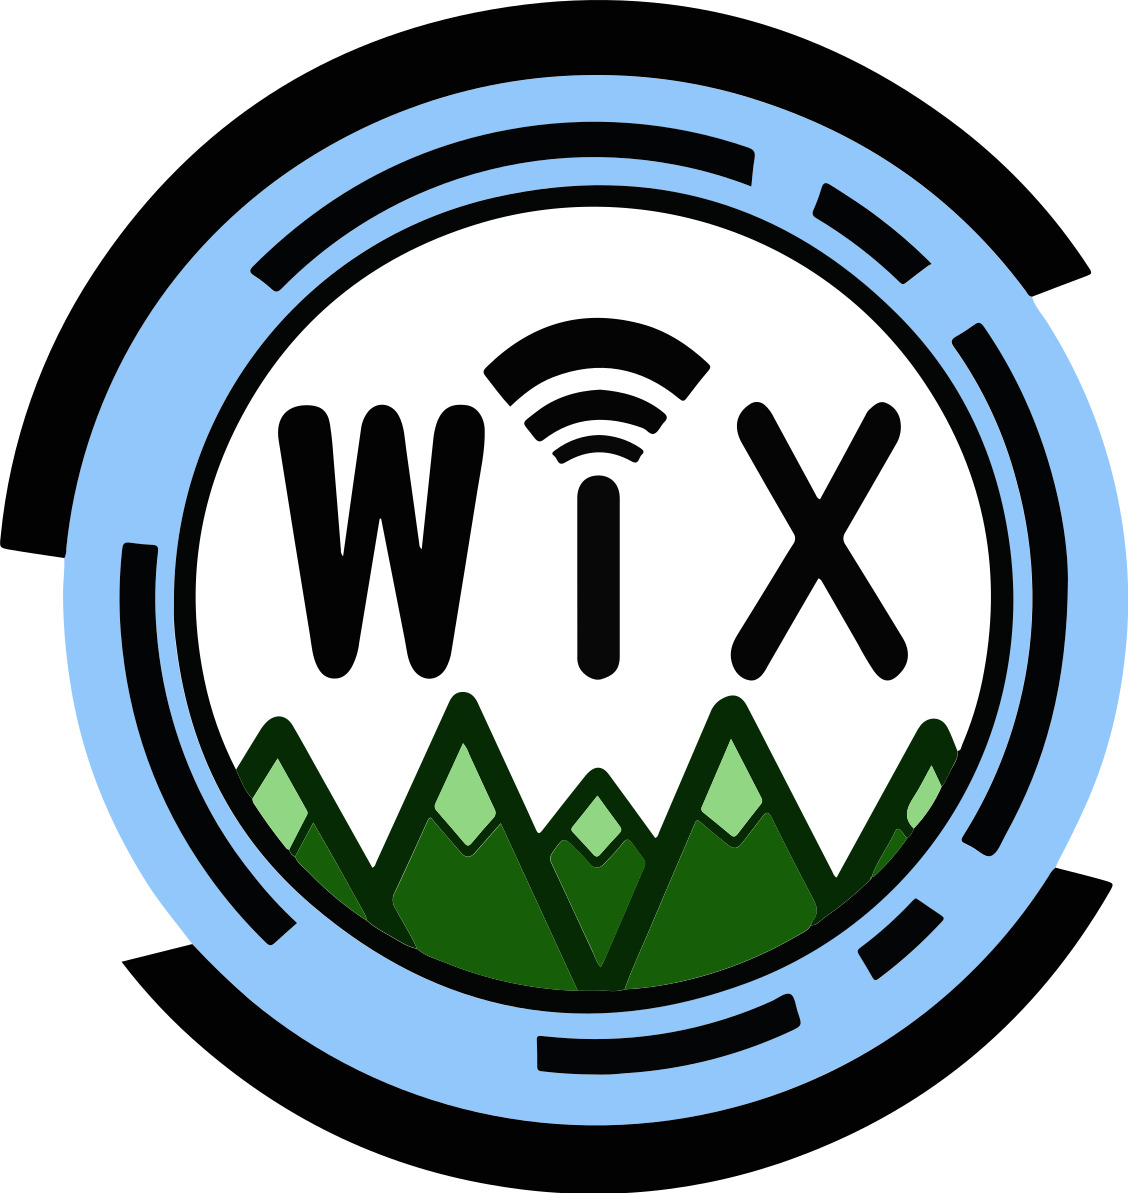 WIX logo